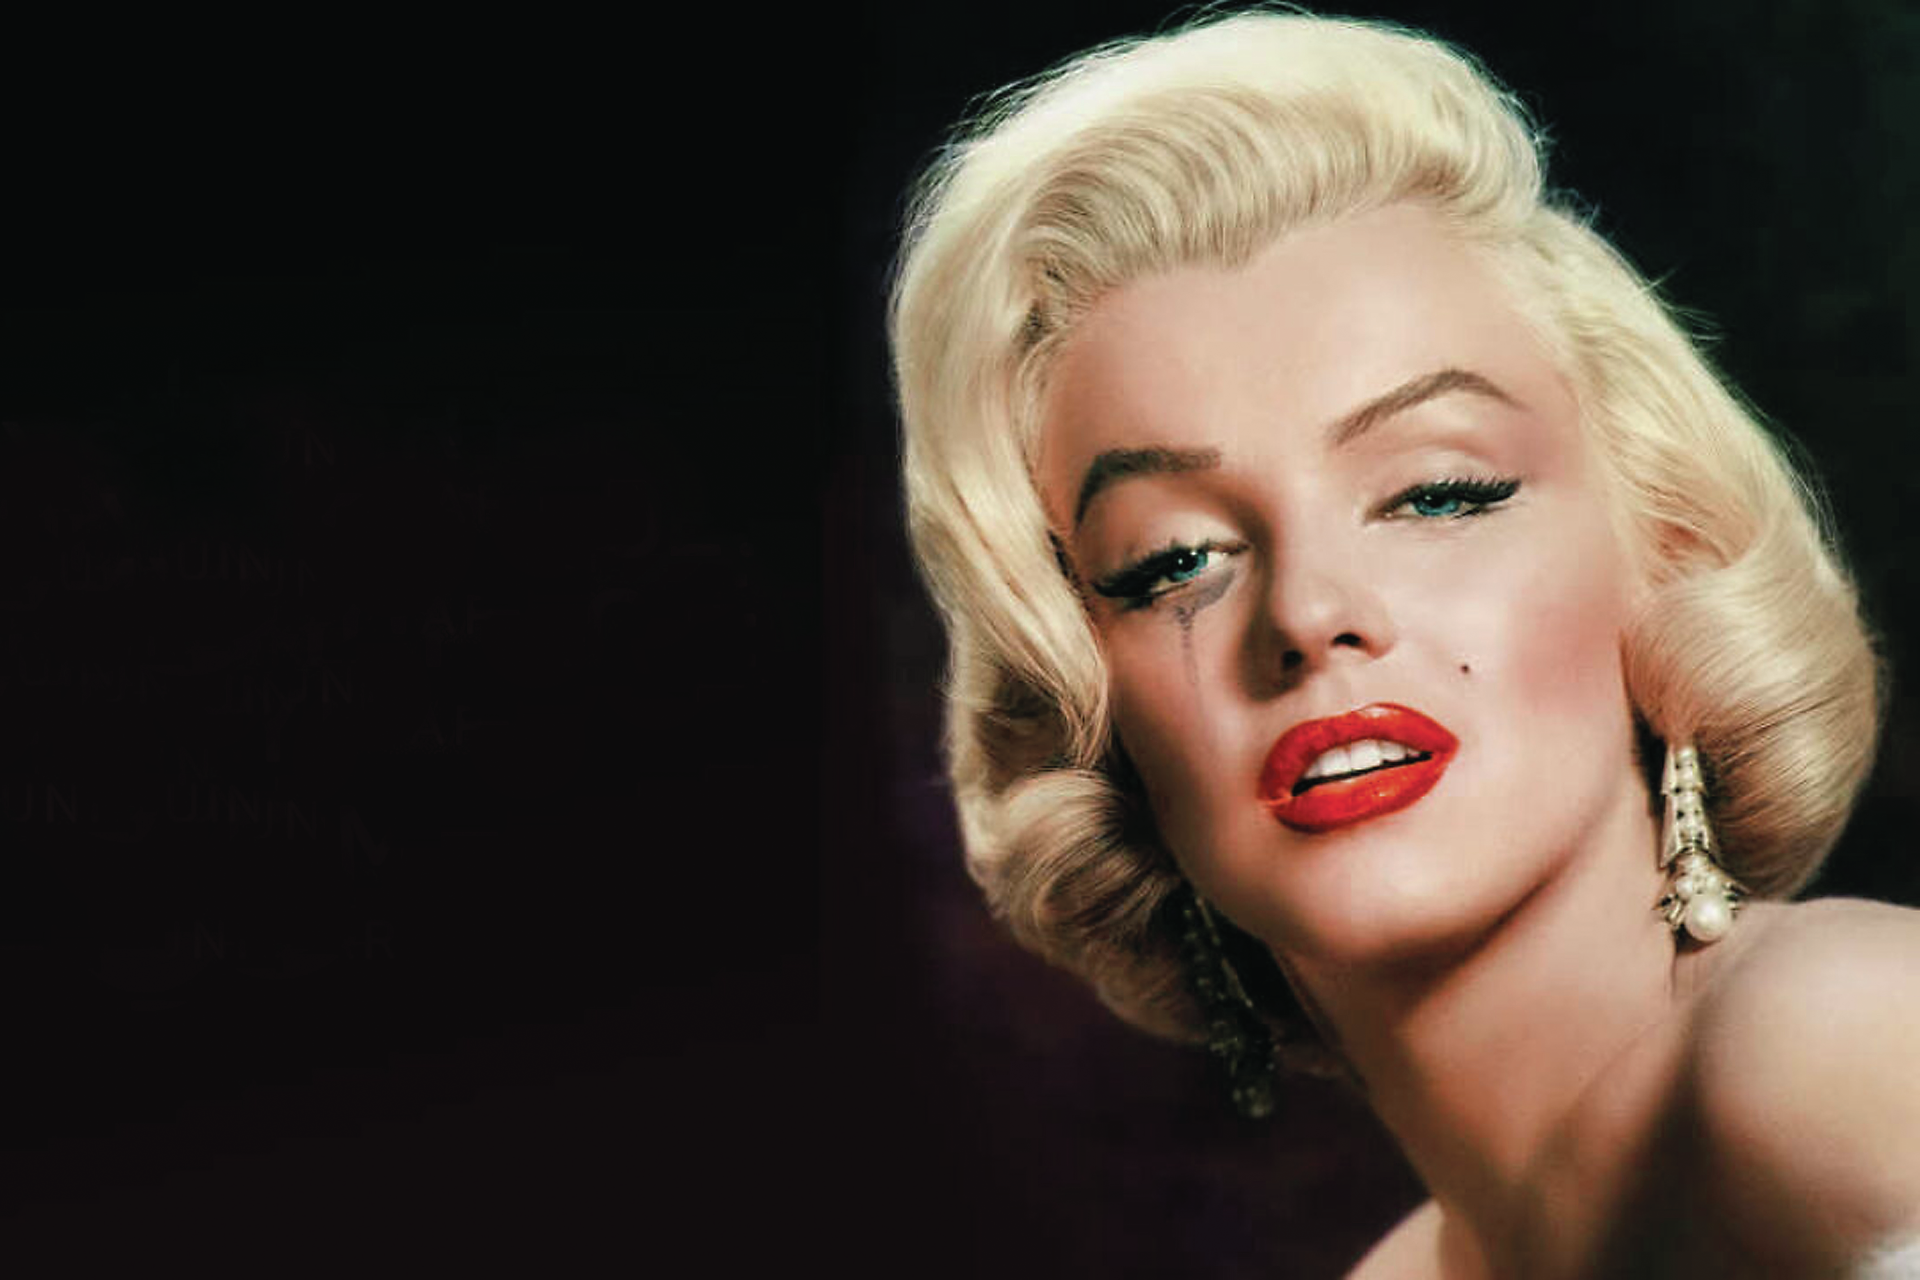 Suicídio, acidente ou assassínio? O Mistério da morte de Marilyn Monroe